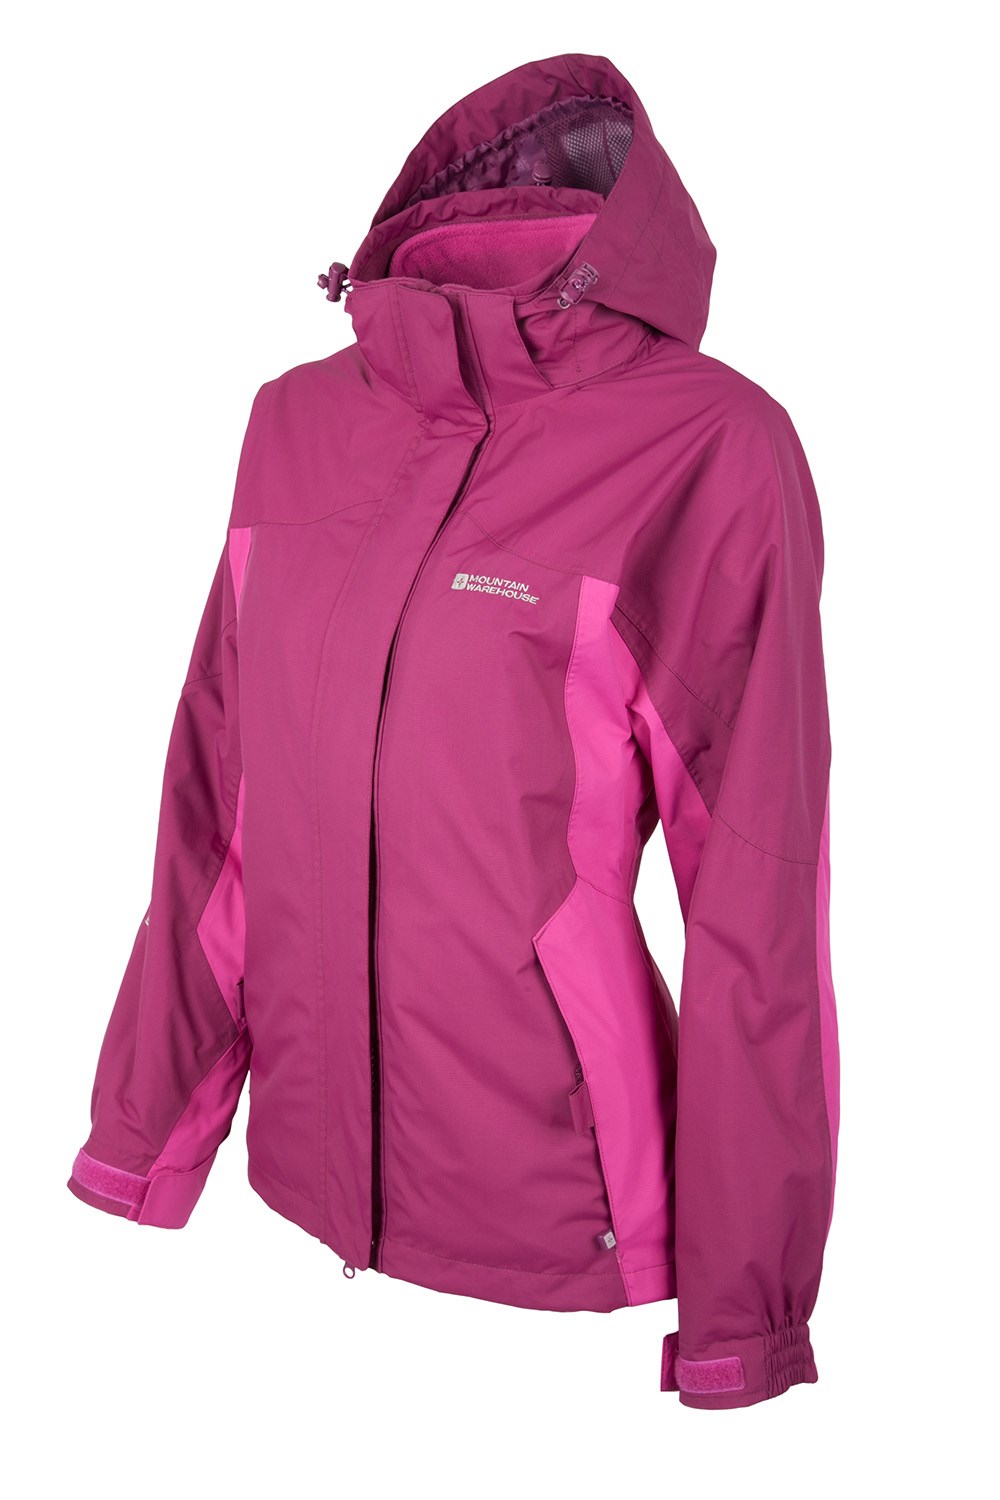 Storm 3 in 1 Womens Waterproof Jacket | eBay